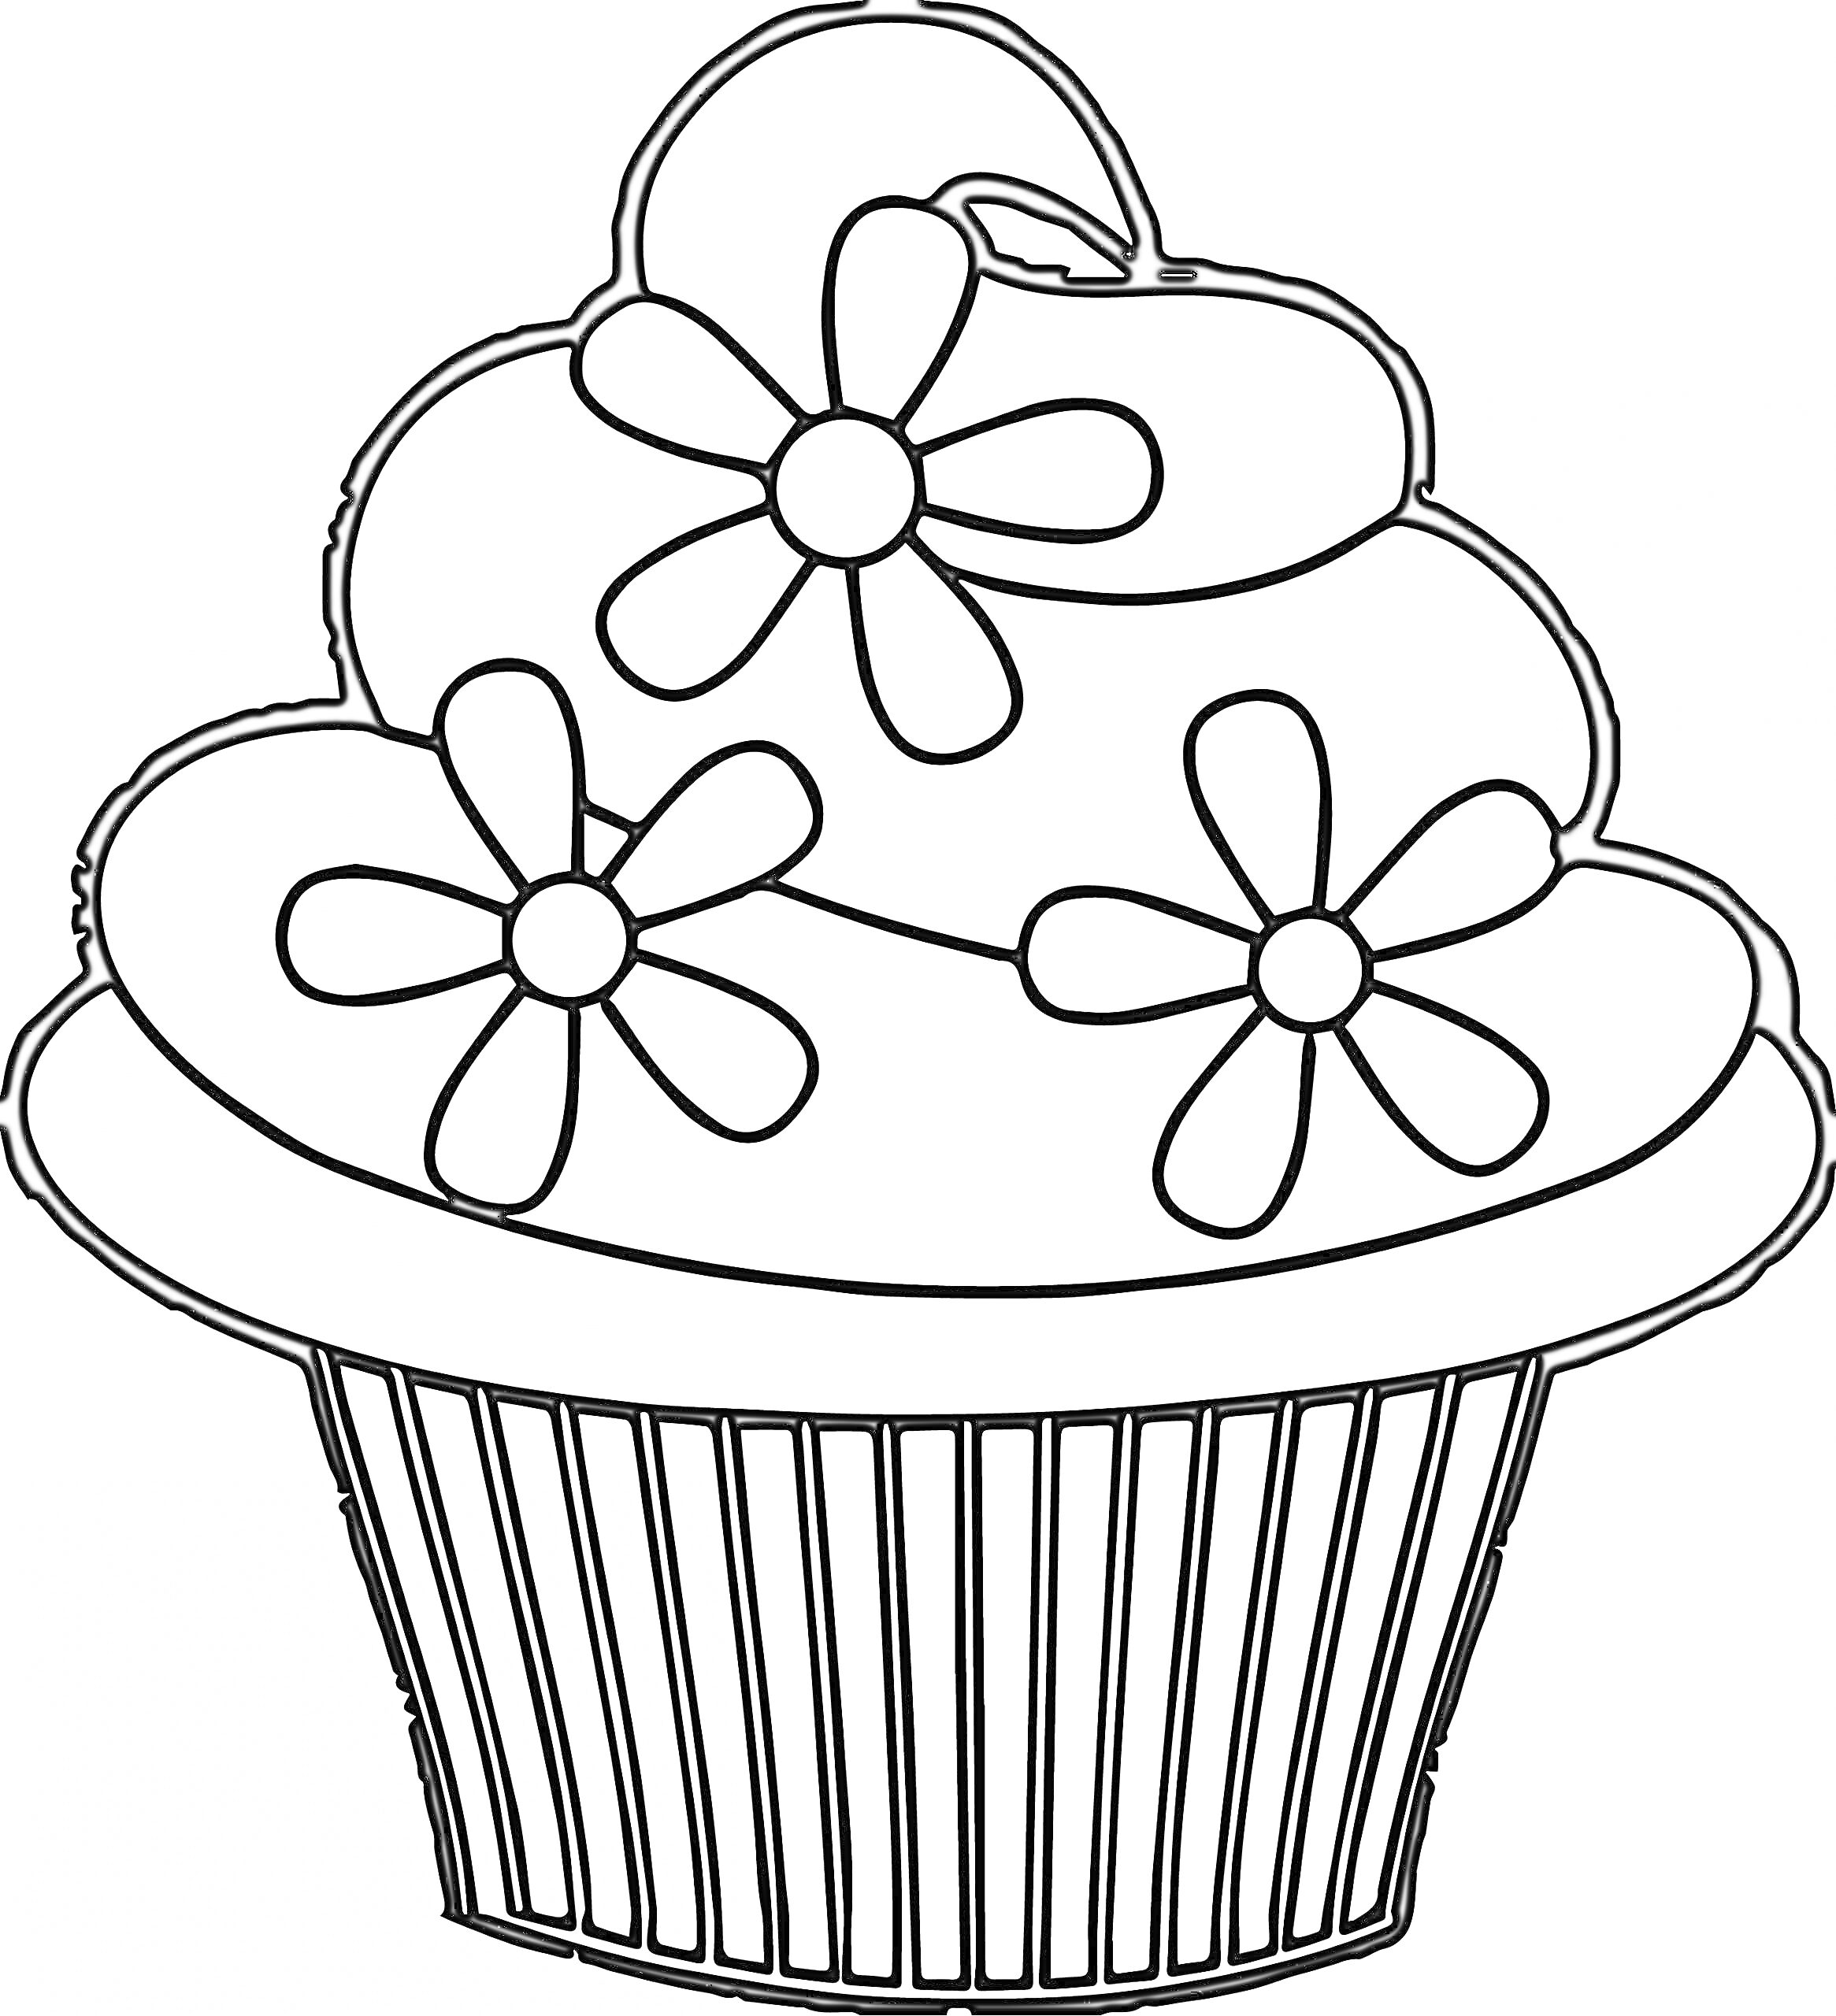 Раскраска Пирожное с тремя цветами и завитками